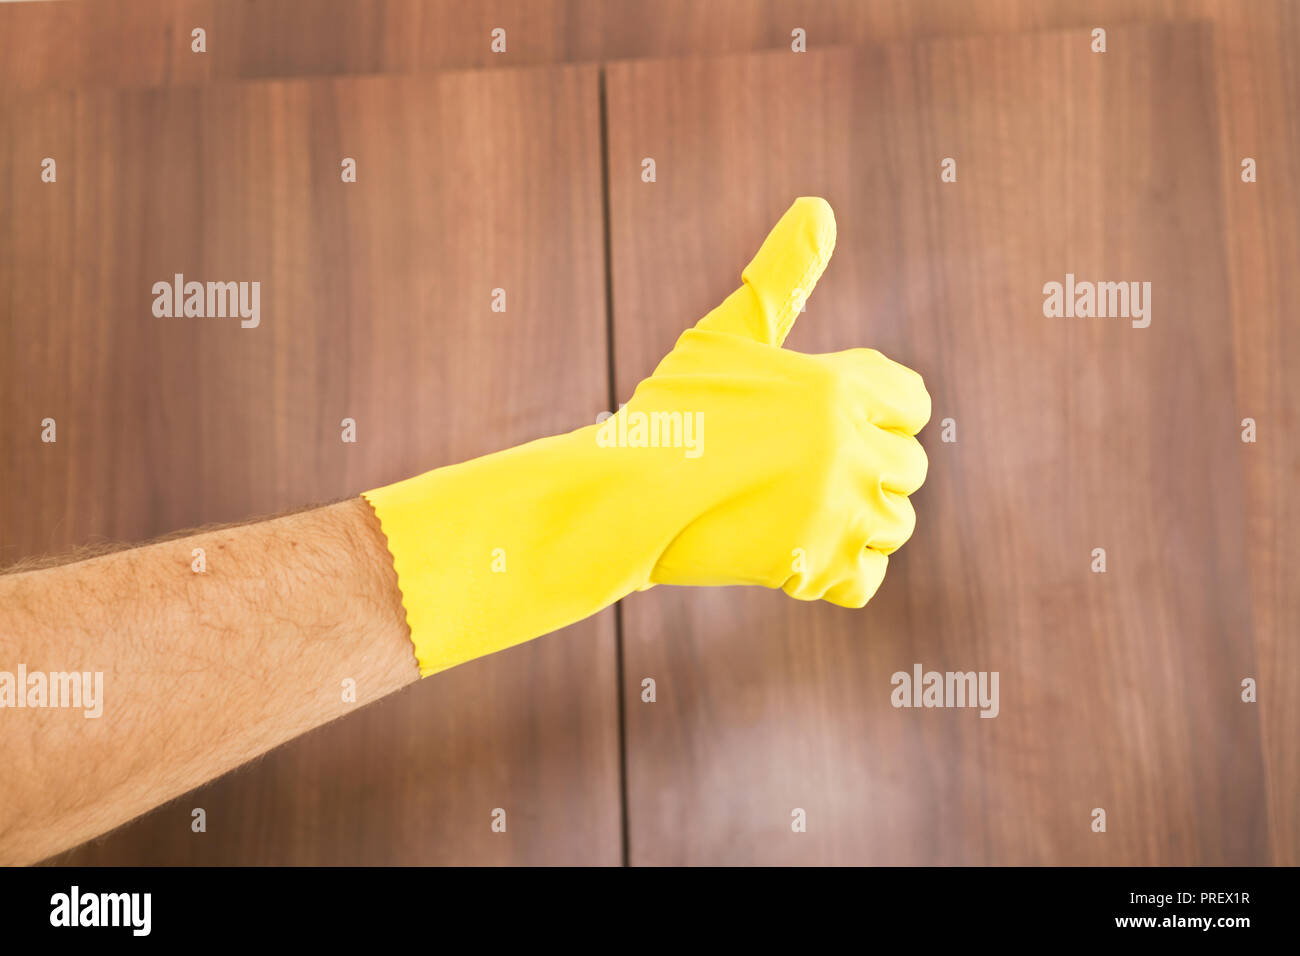 Limpieza de éxito. Thumbs up de mano en guante de protección amarilla Foto de stock